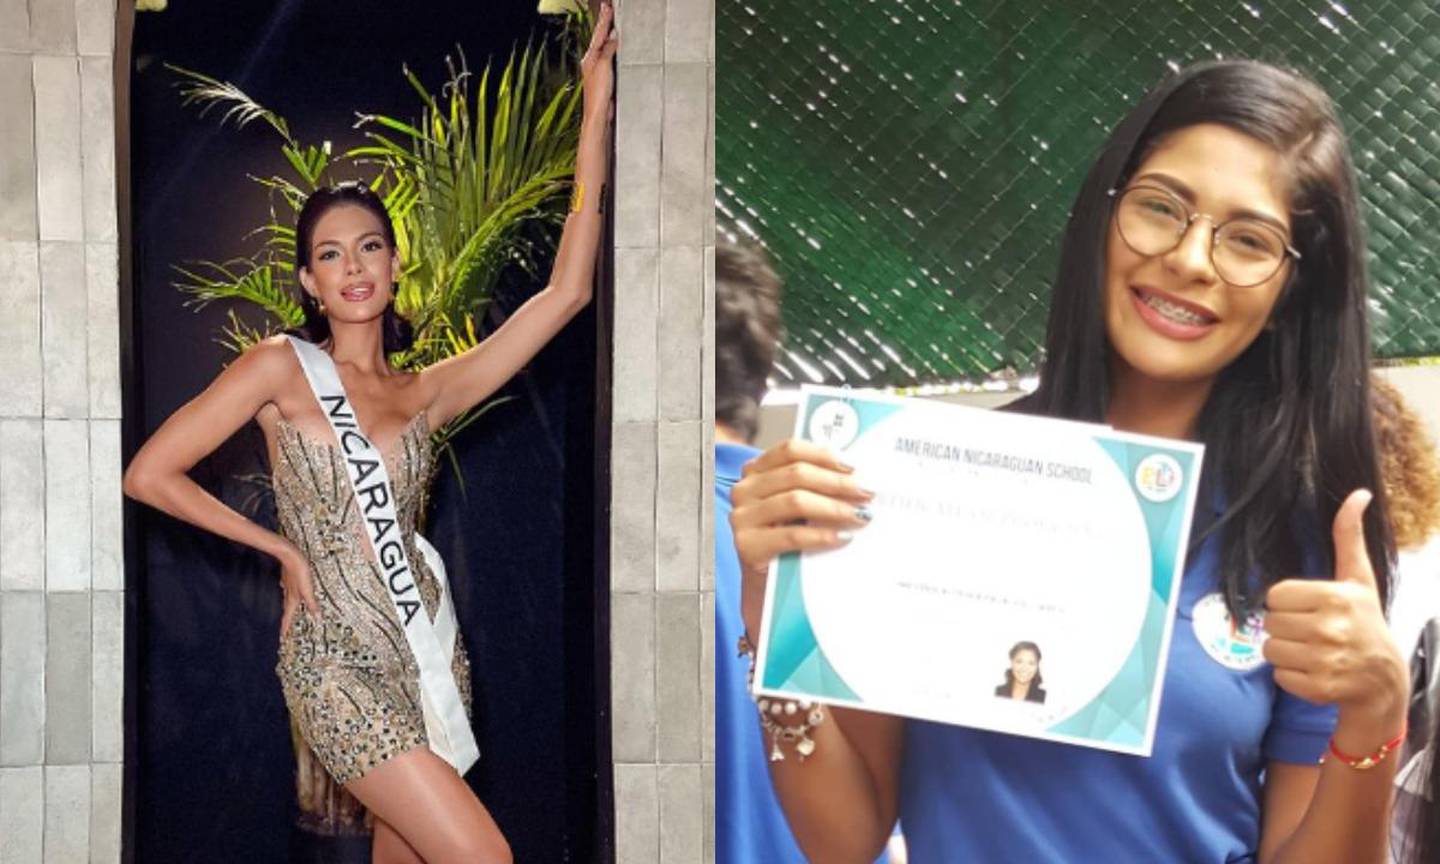 La candidata  Sheynnis Palacios ganó el certamen internacional de belleza, el pasado 18 de noviembre. FOTO: Instagram: @heynnispalacios_of / @cornejo_raq